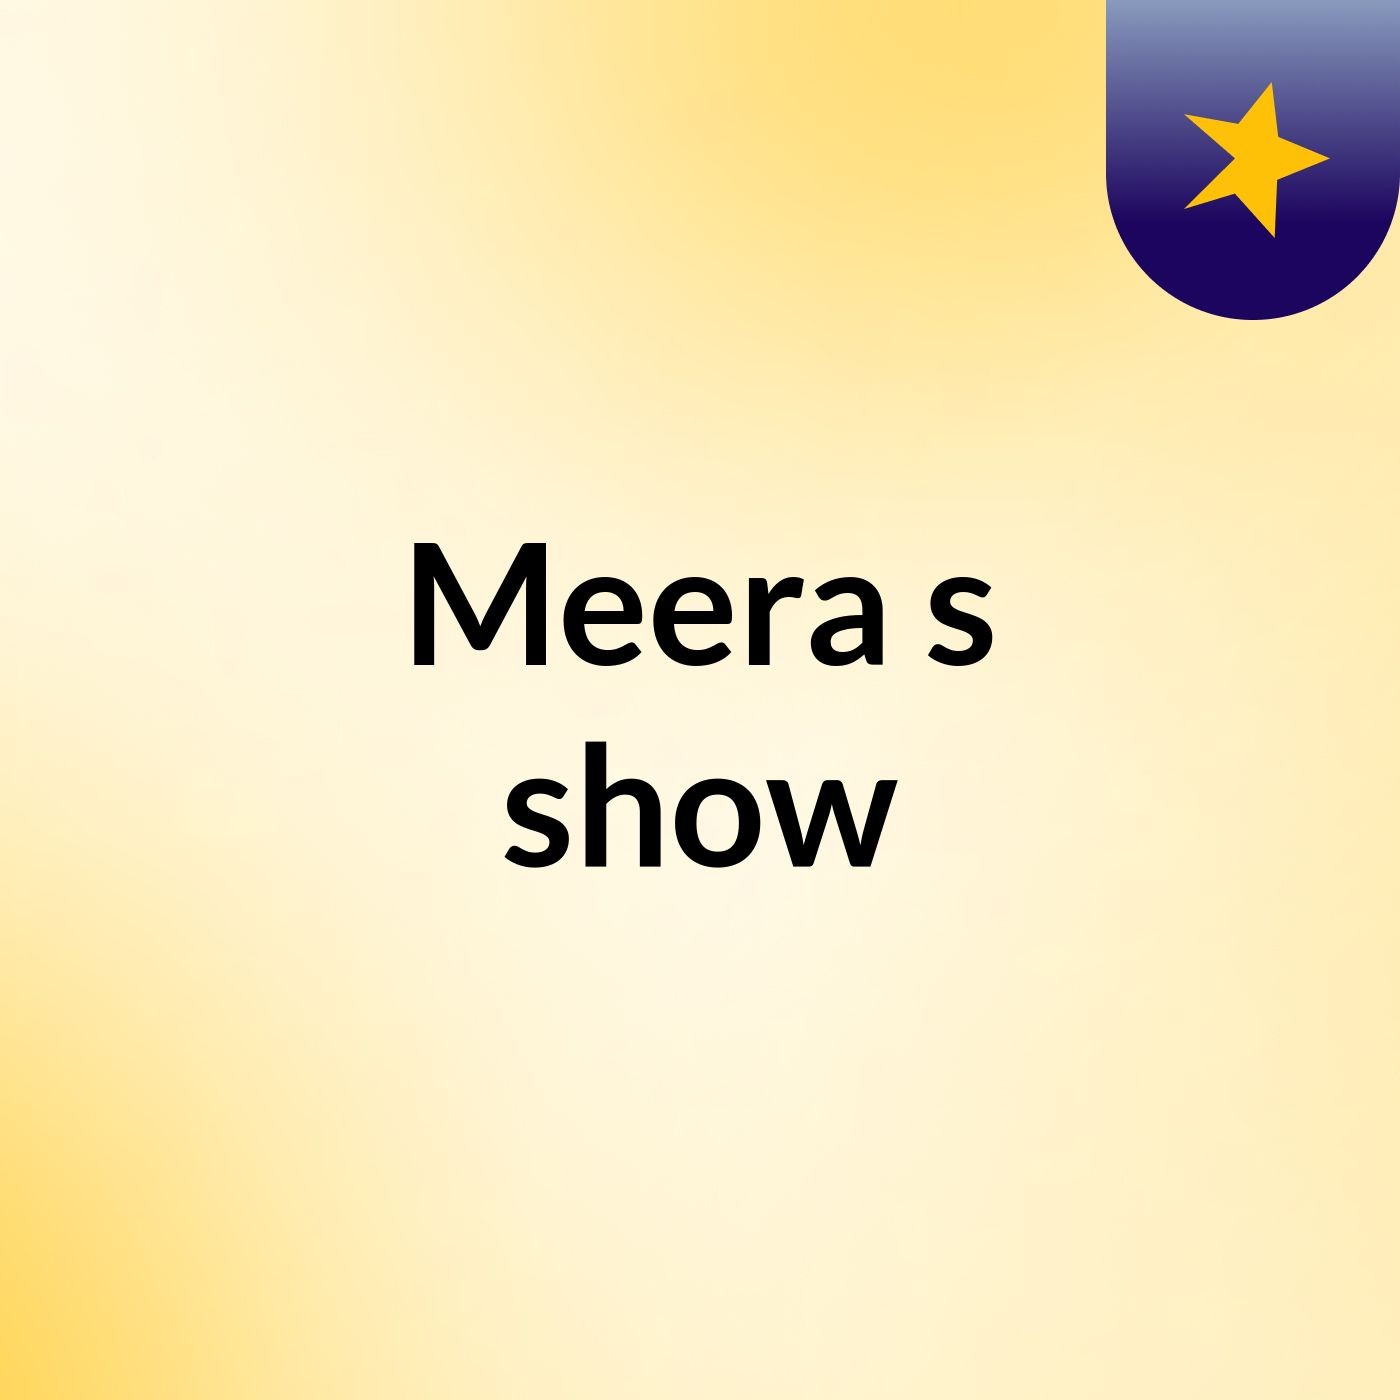 Meera's show